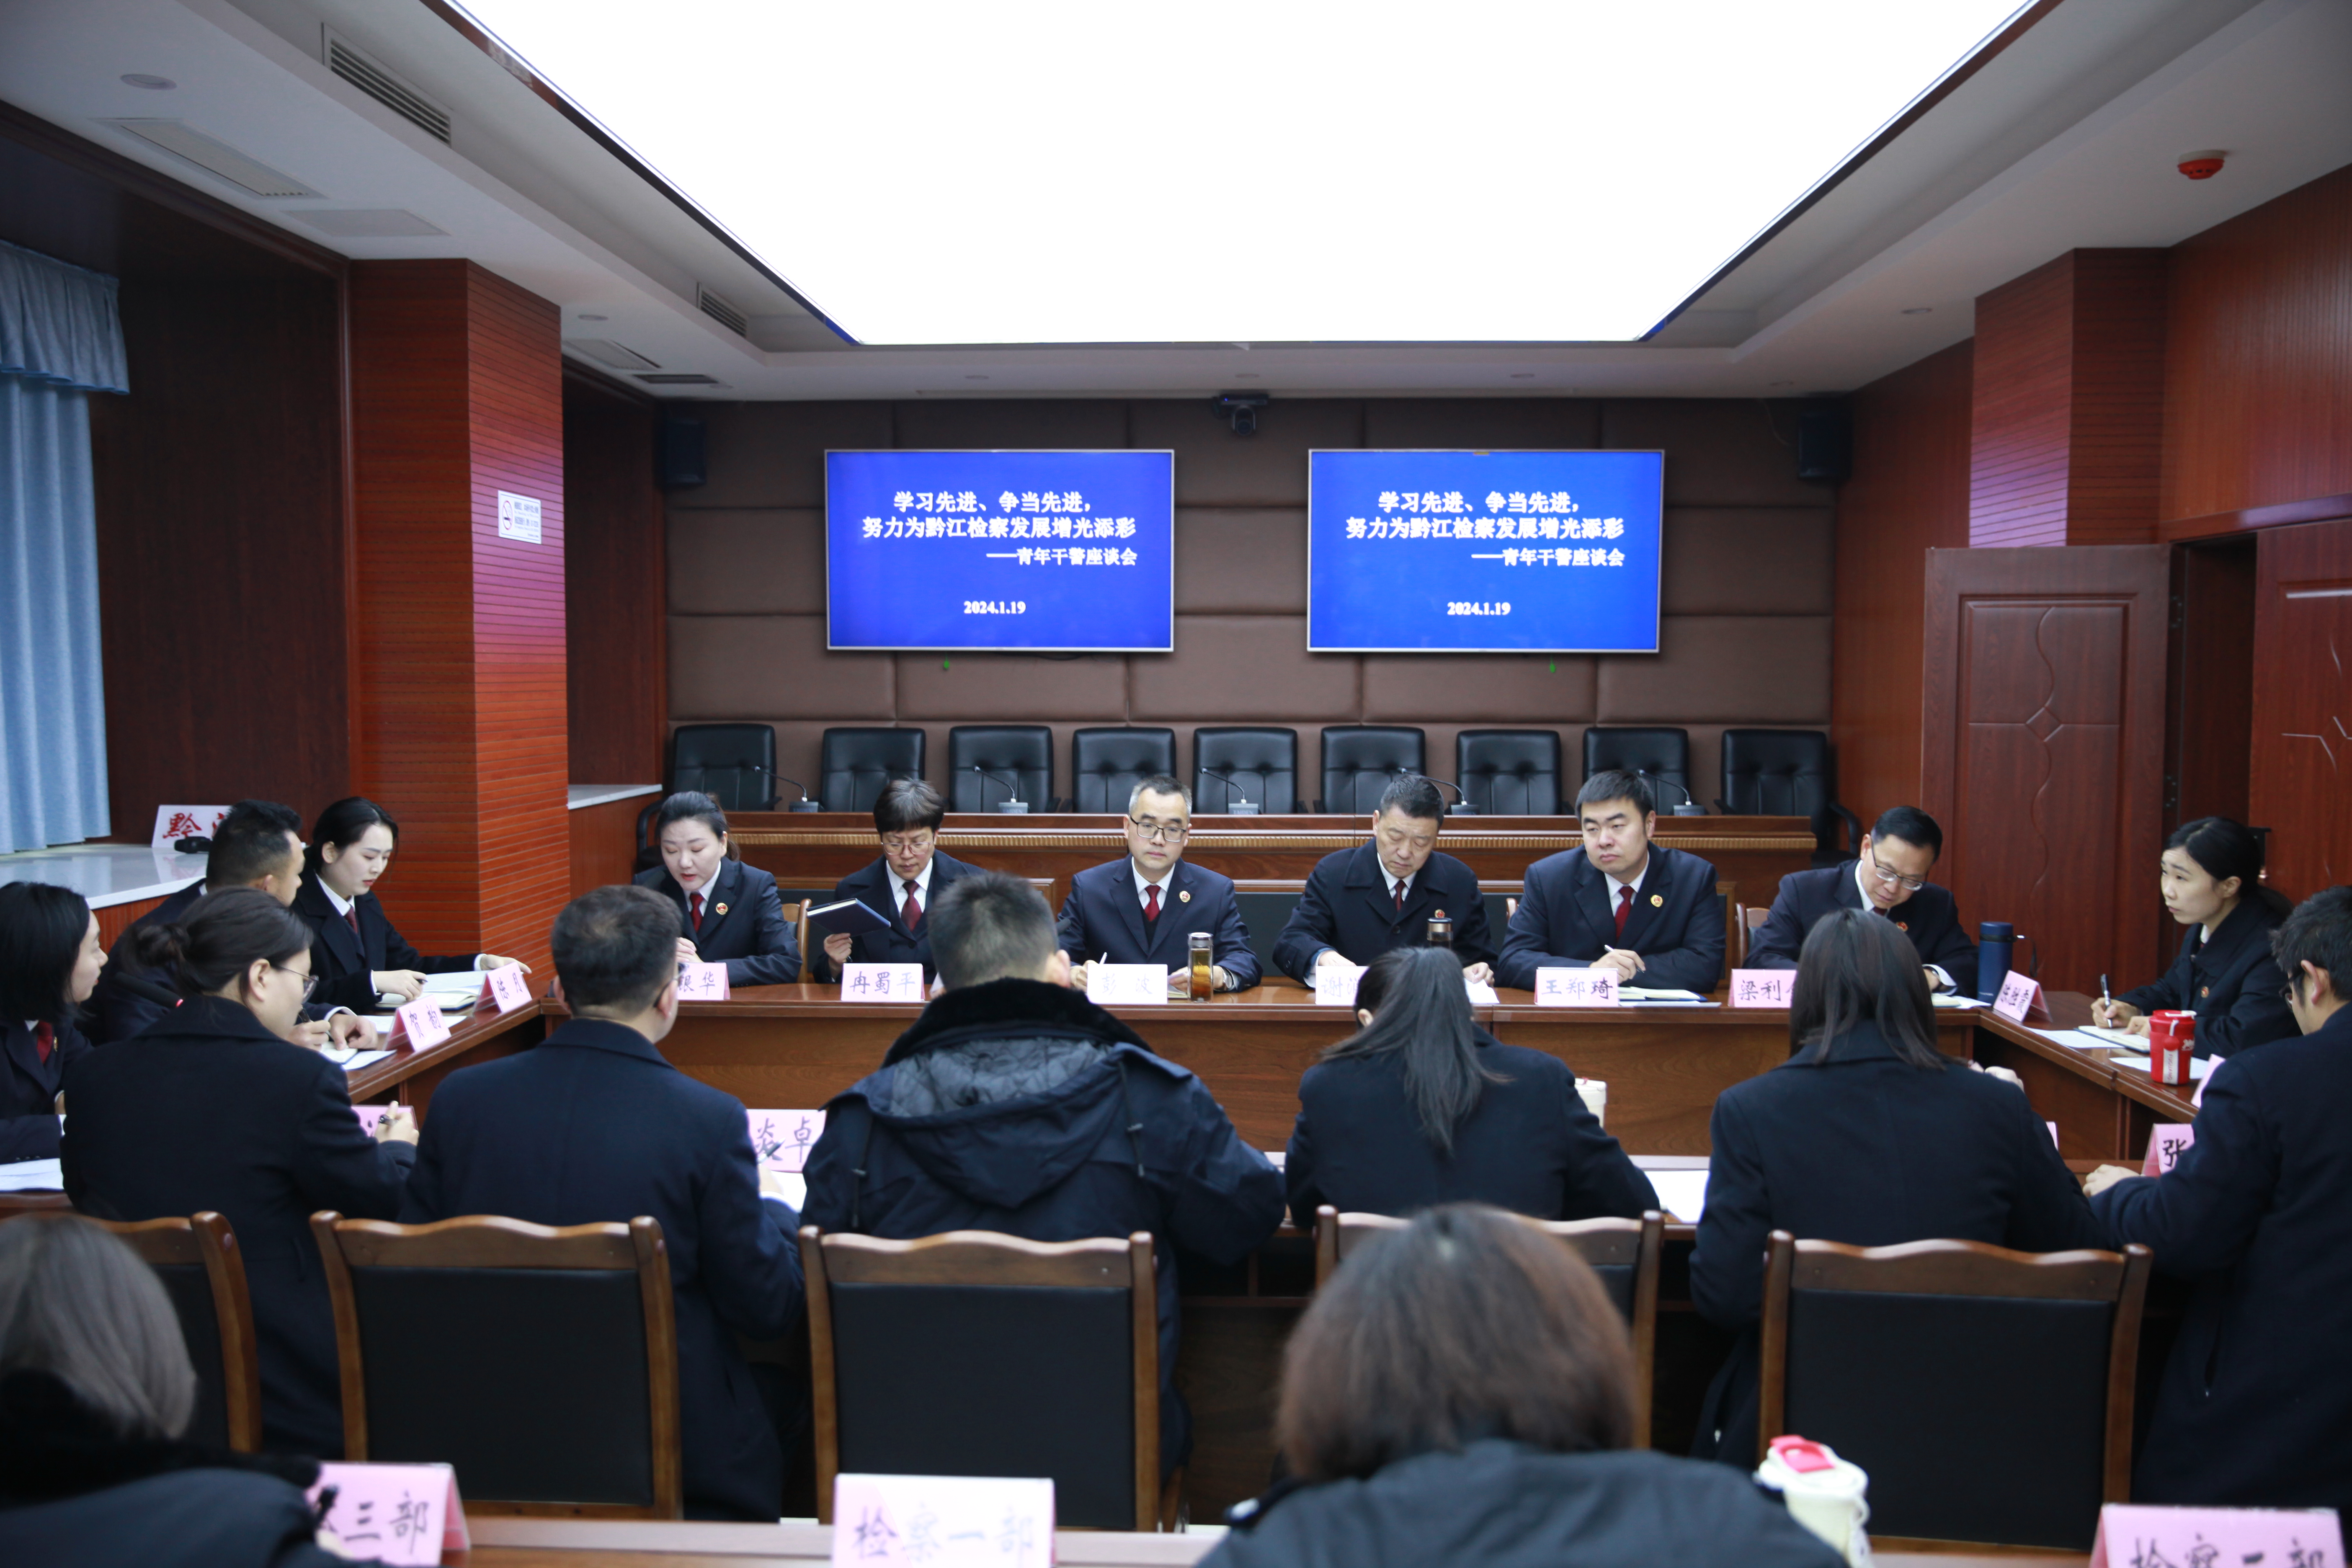 我院召开了“学习先进、争当先进，努力为黔江检察发展增光添彩”青年干警座谈会